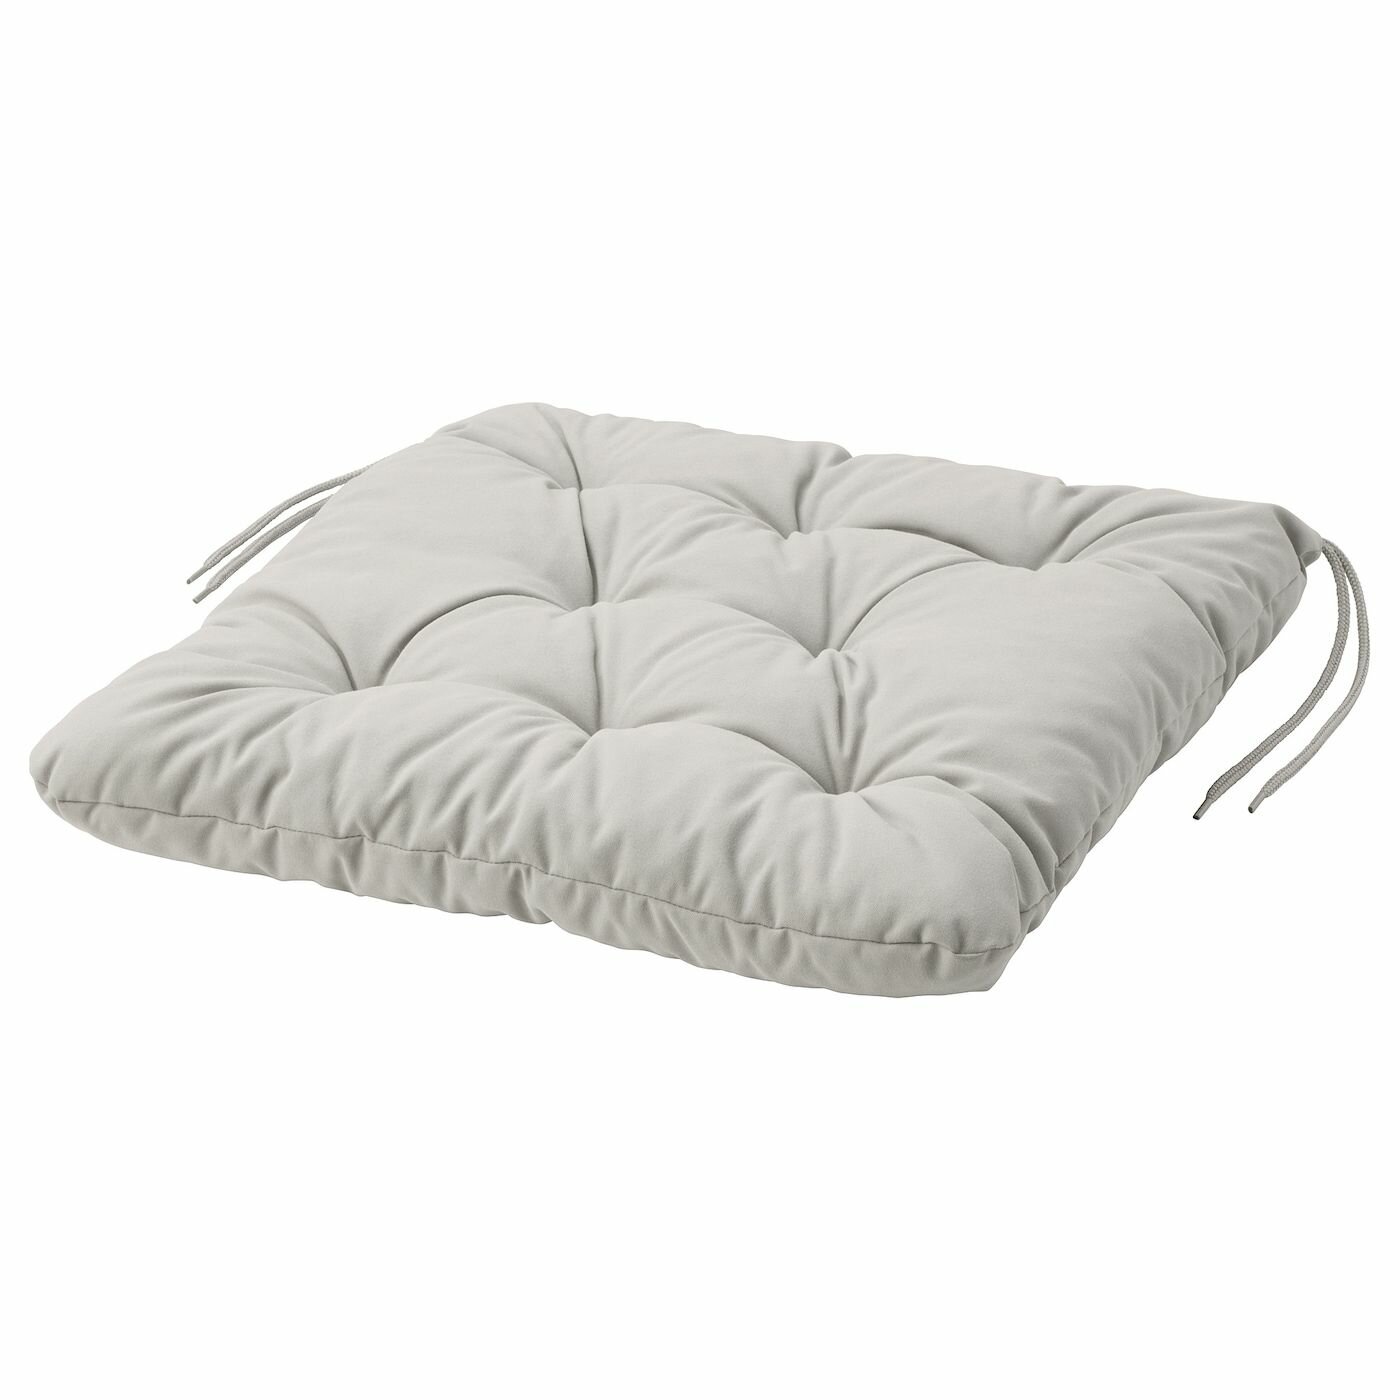 Подушка для садового стула куддарна икеа (KUDDARNA IKEA), 44x44x7 см, серая